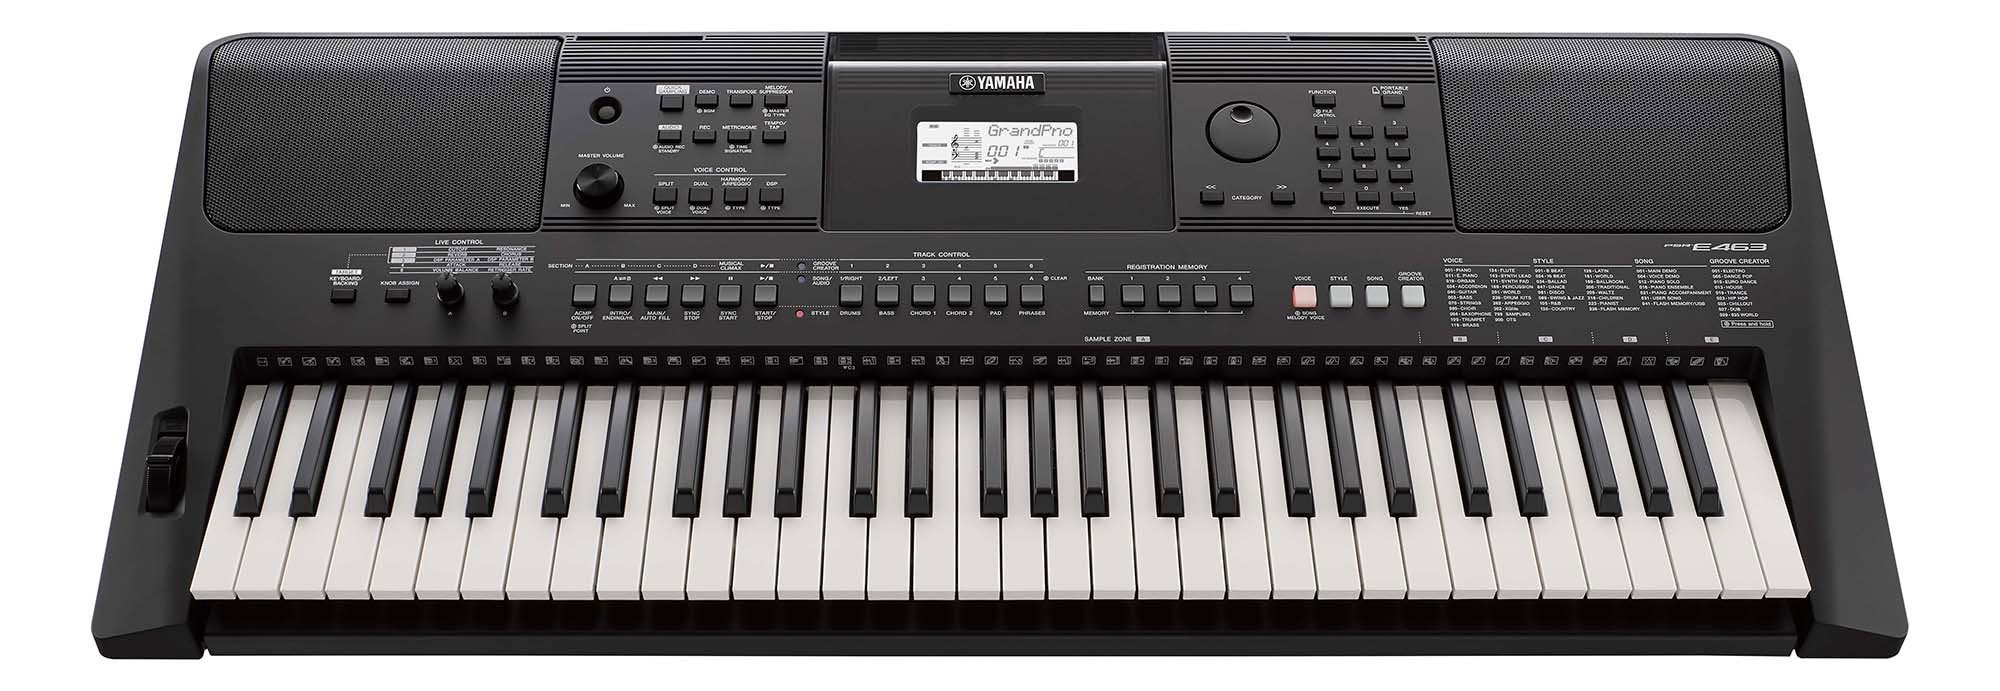 Organ Yamaha Psr E463